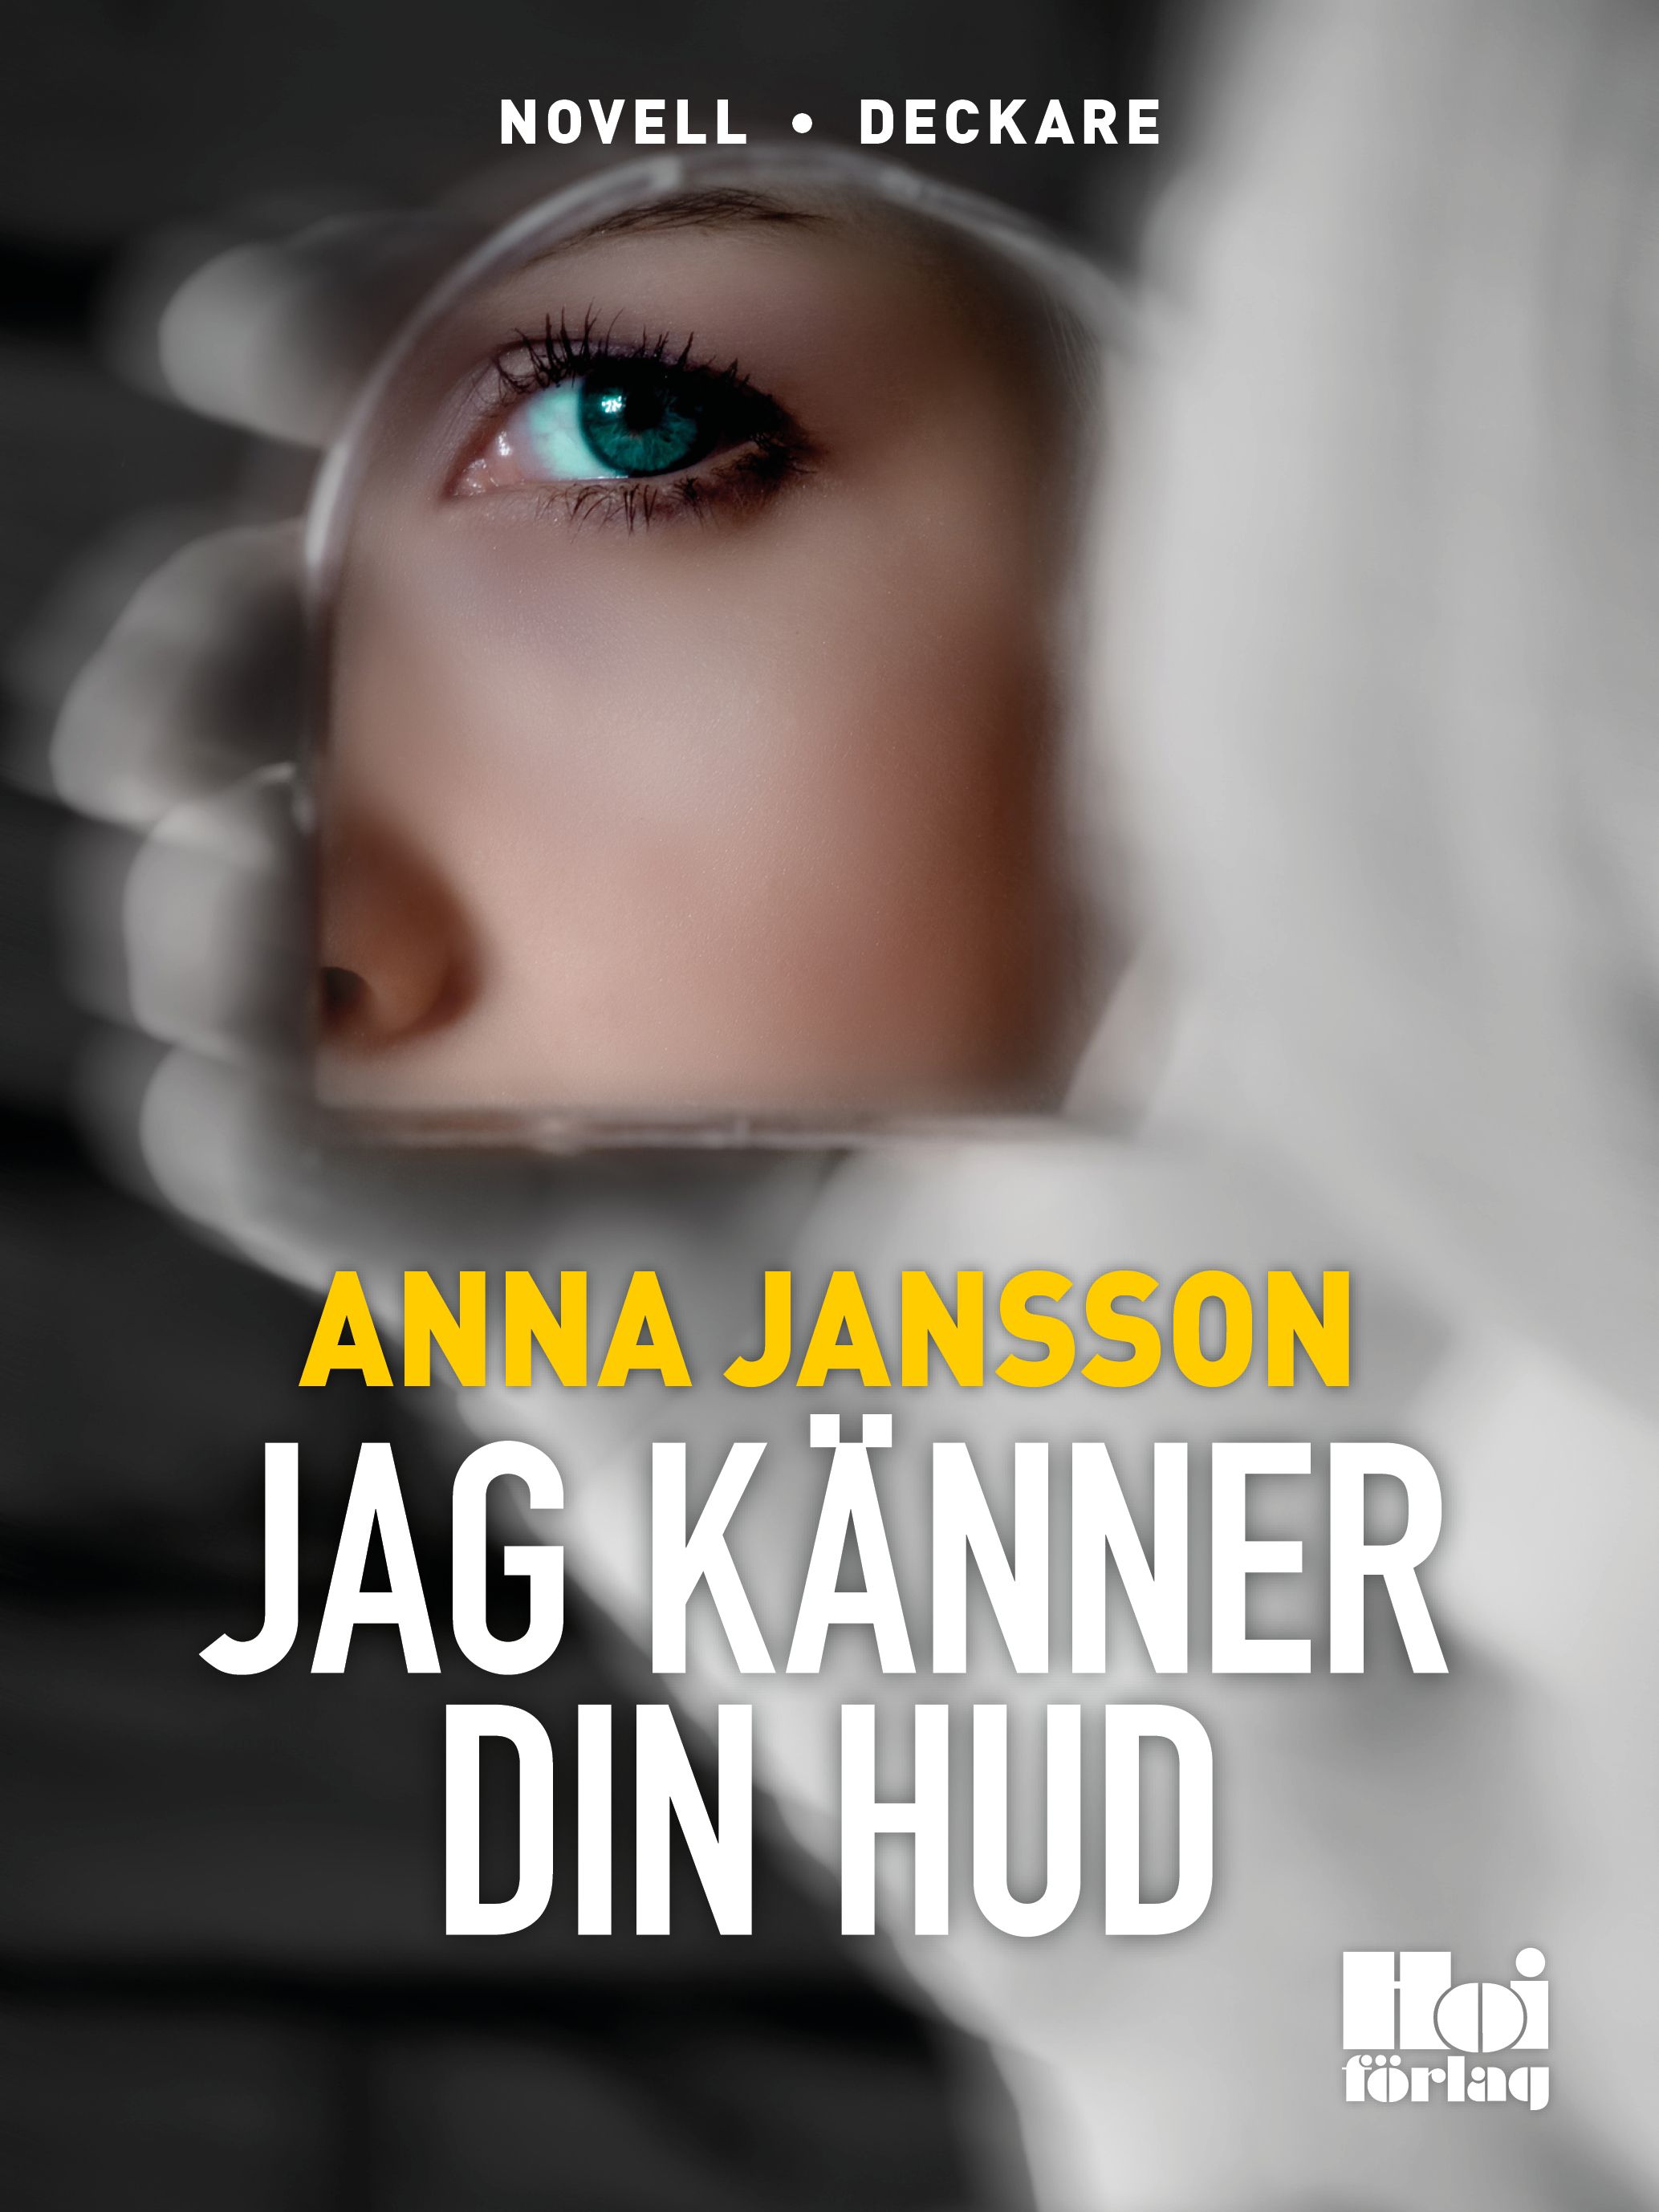 Jag känner din hud, eBook by Anna Jansson